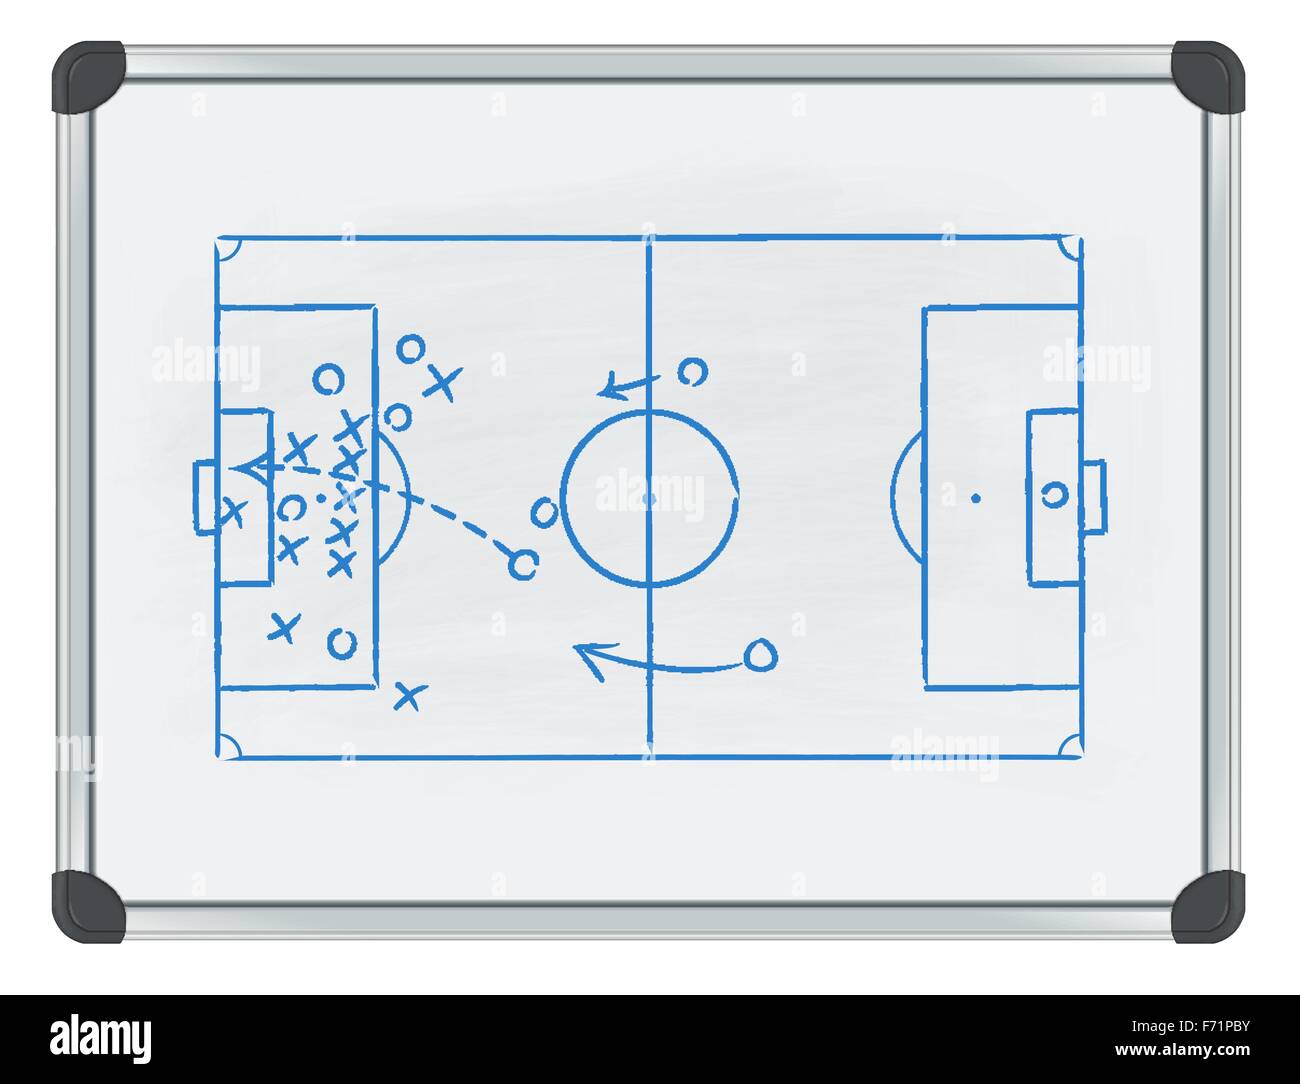 Tactique de football sur tableau blanc Image Vectorielle Stock - Alamy